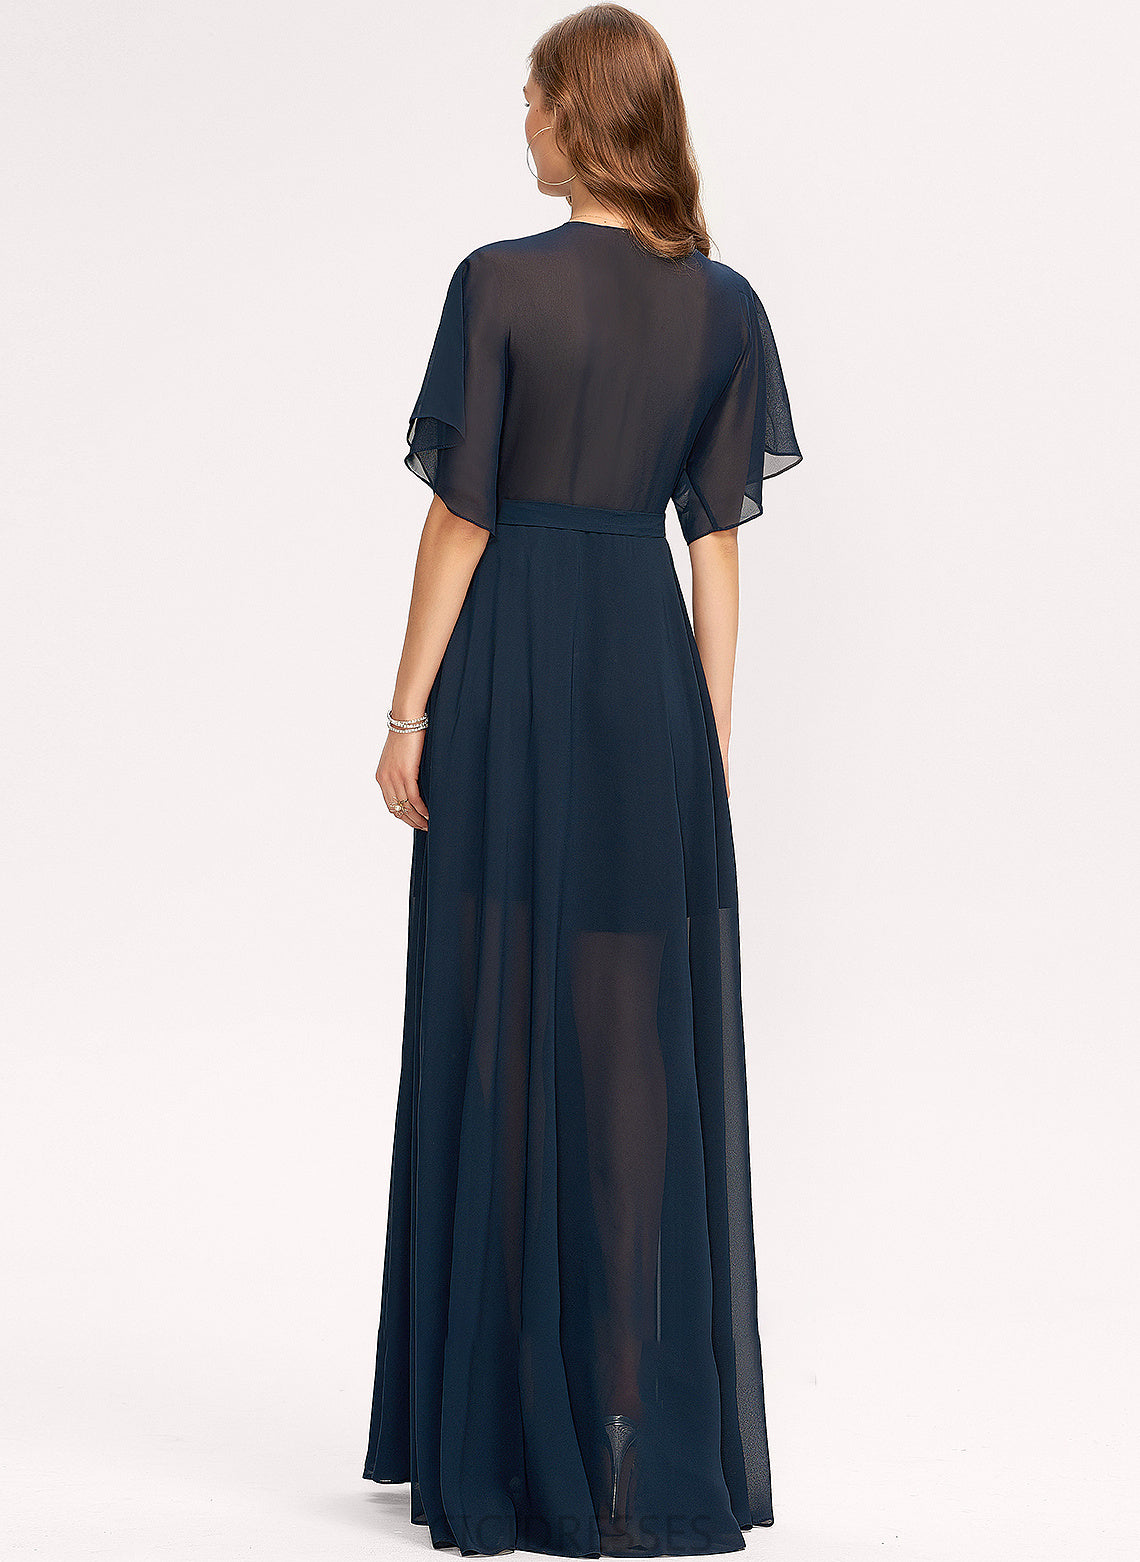 A-Line Silhouette Floor-Length Length Neckline Fabric V-neck SplitFront Embellishment Joan Floor Length A-Line/Princess Bridesmaid Dresses